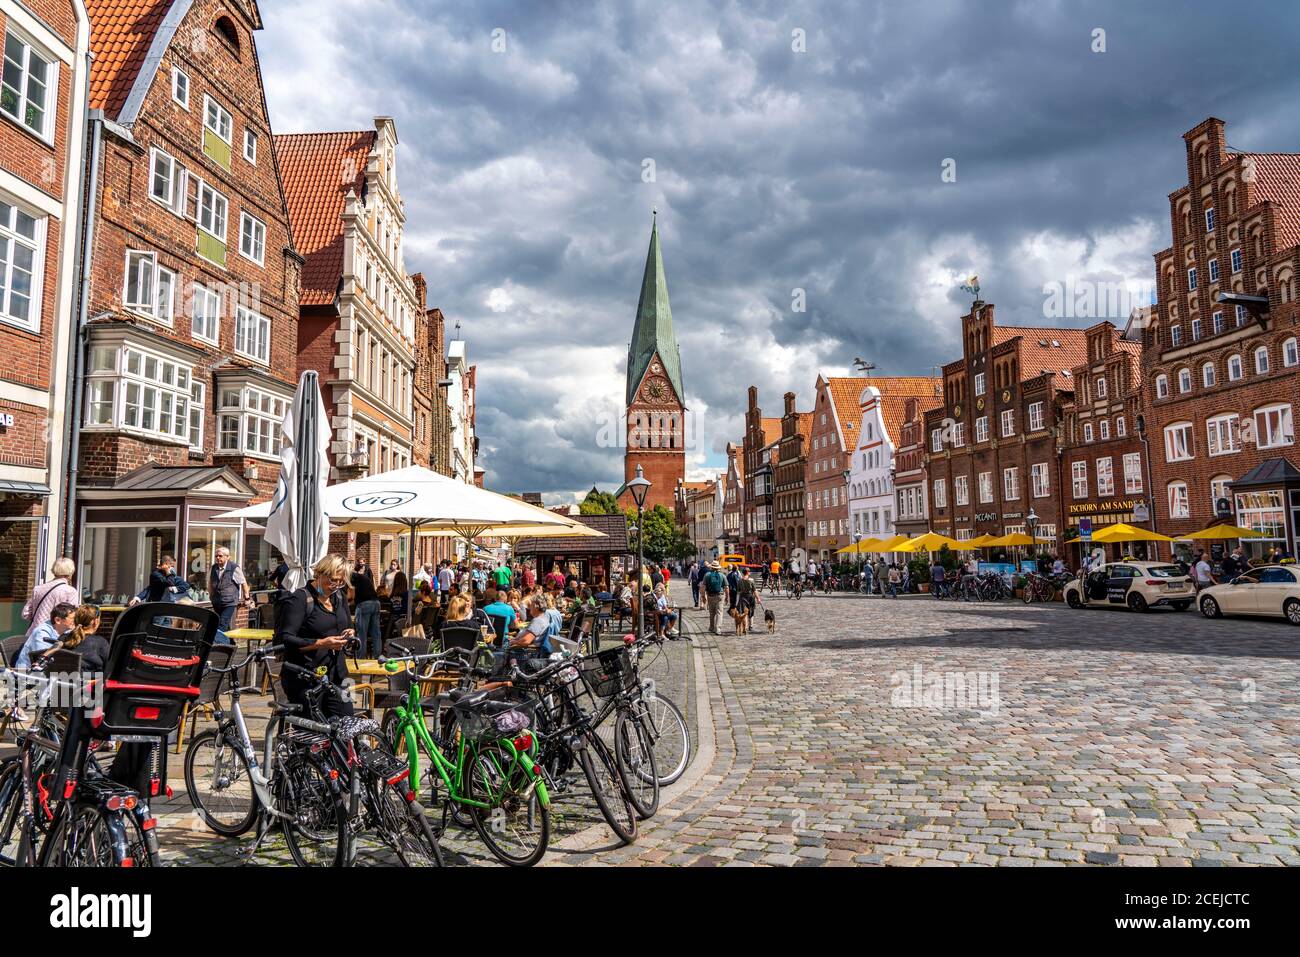 Die Altstadt von Lüneburg, zentraler Platz am Sande, mit mittelalterlichen Giebelhäusern, St.Johanniskirche, Niedersachsen, Deutschland Stockfoto